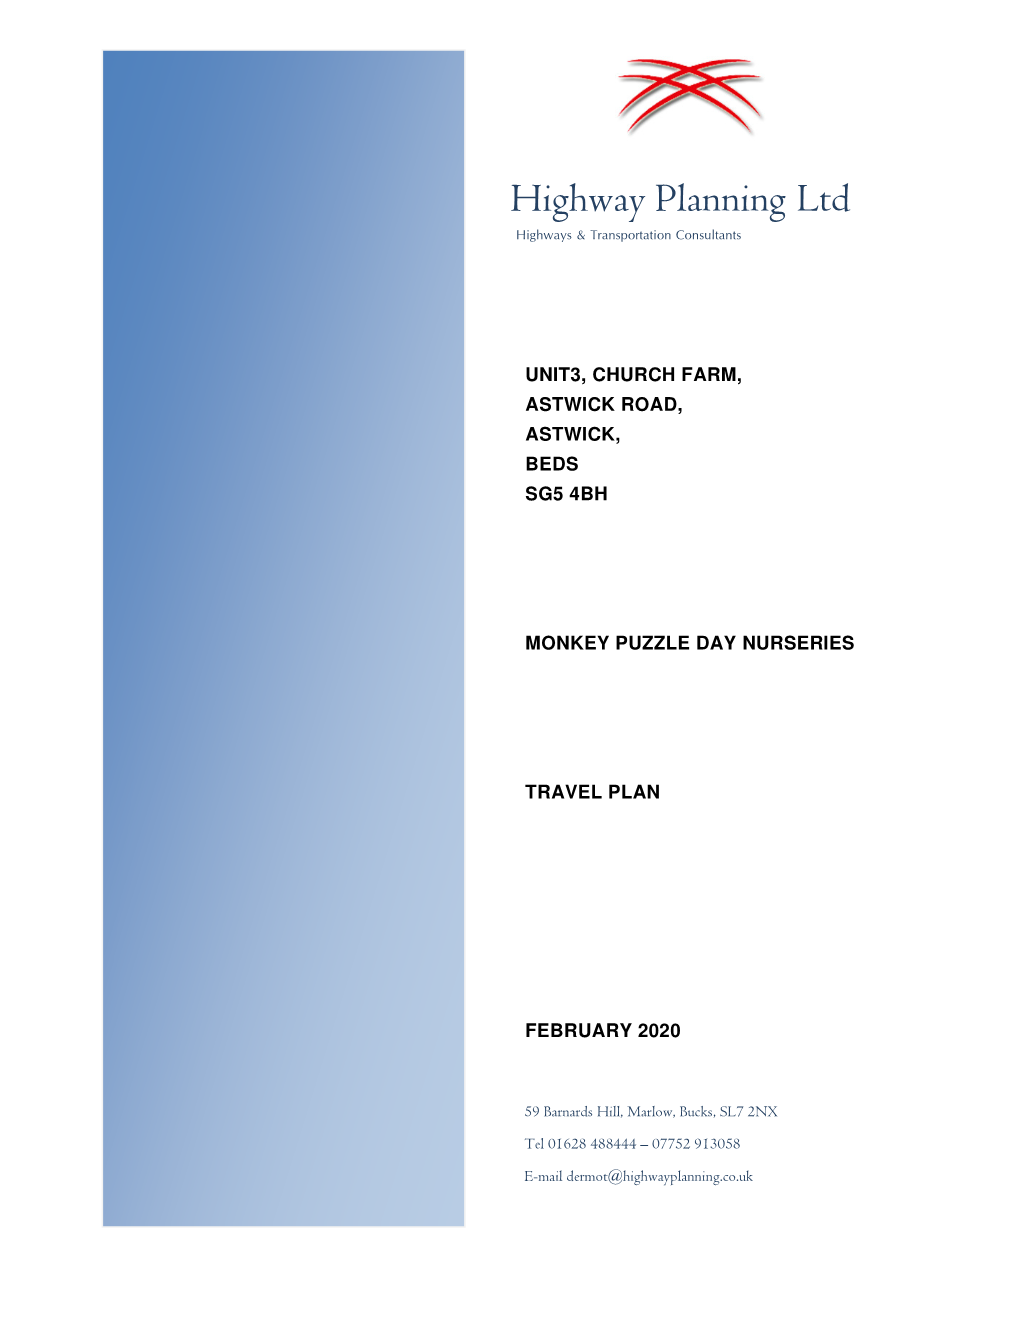 Highway Planning Ltd Highways & Transportation Consultants